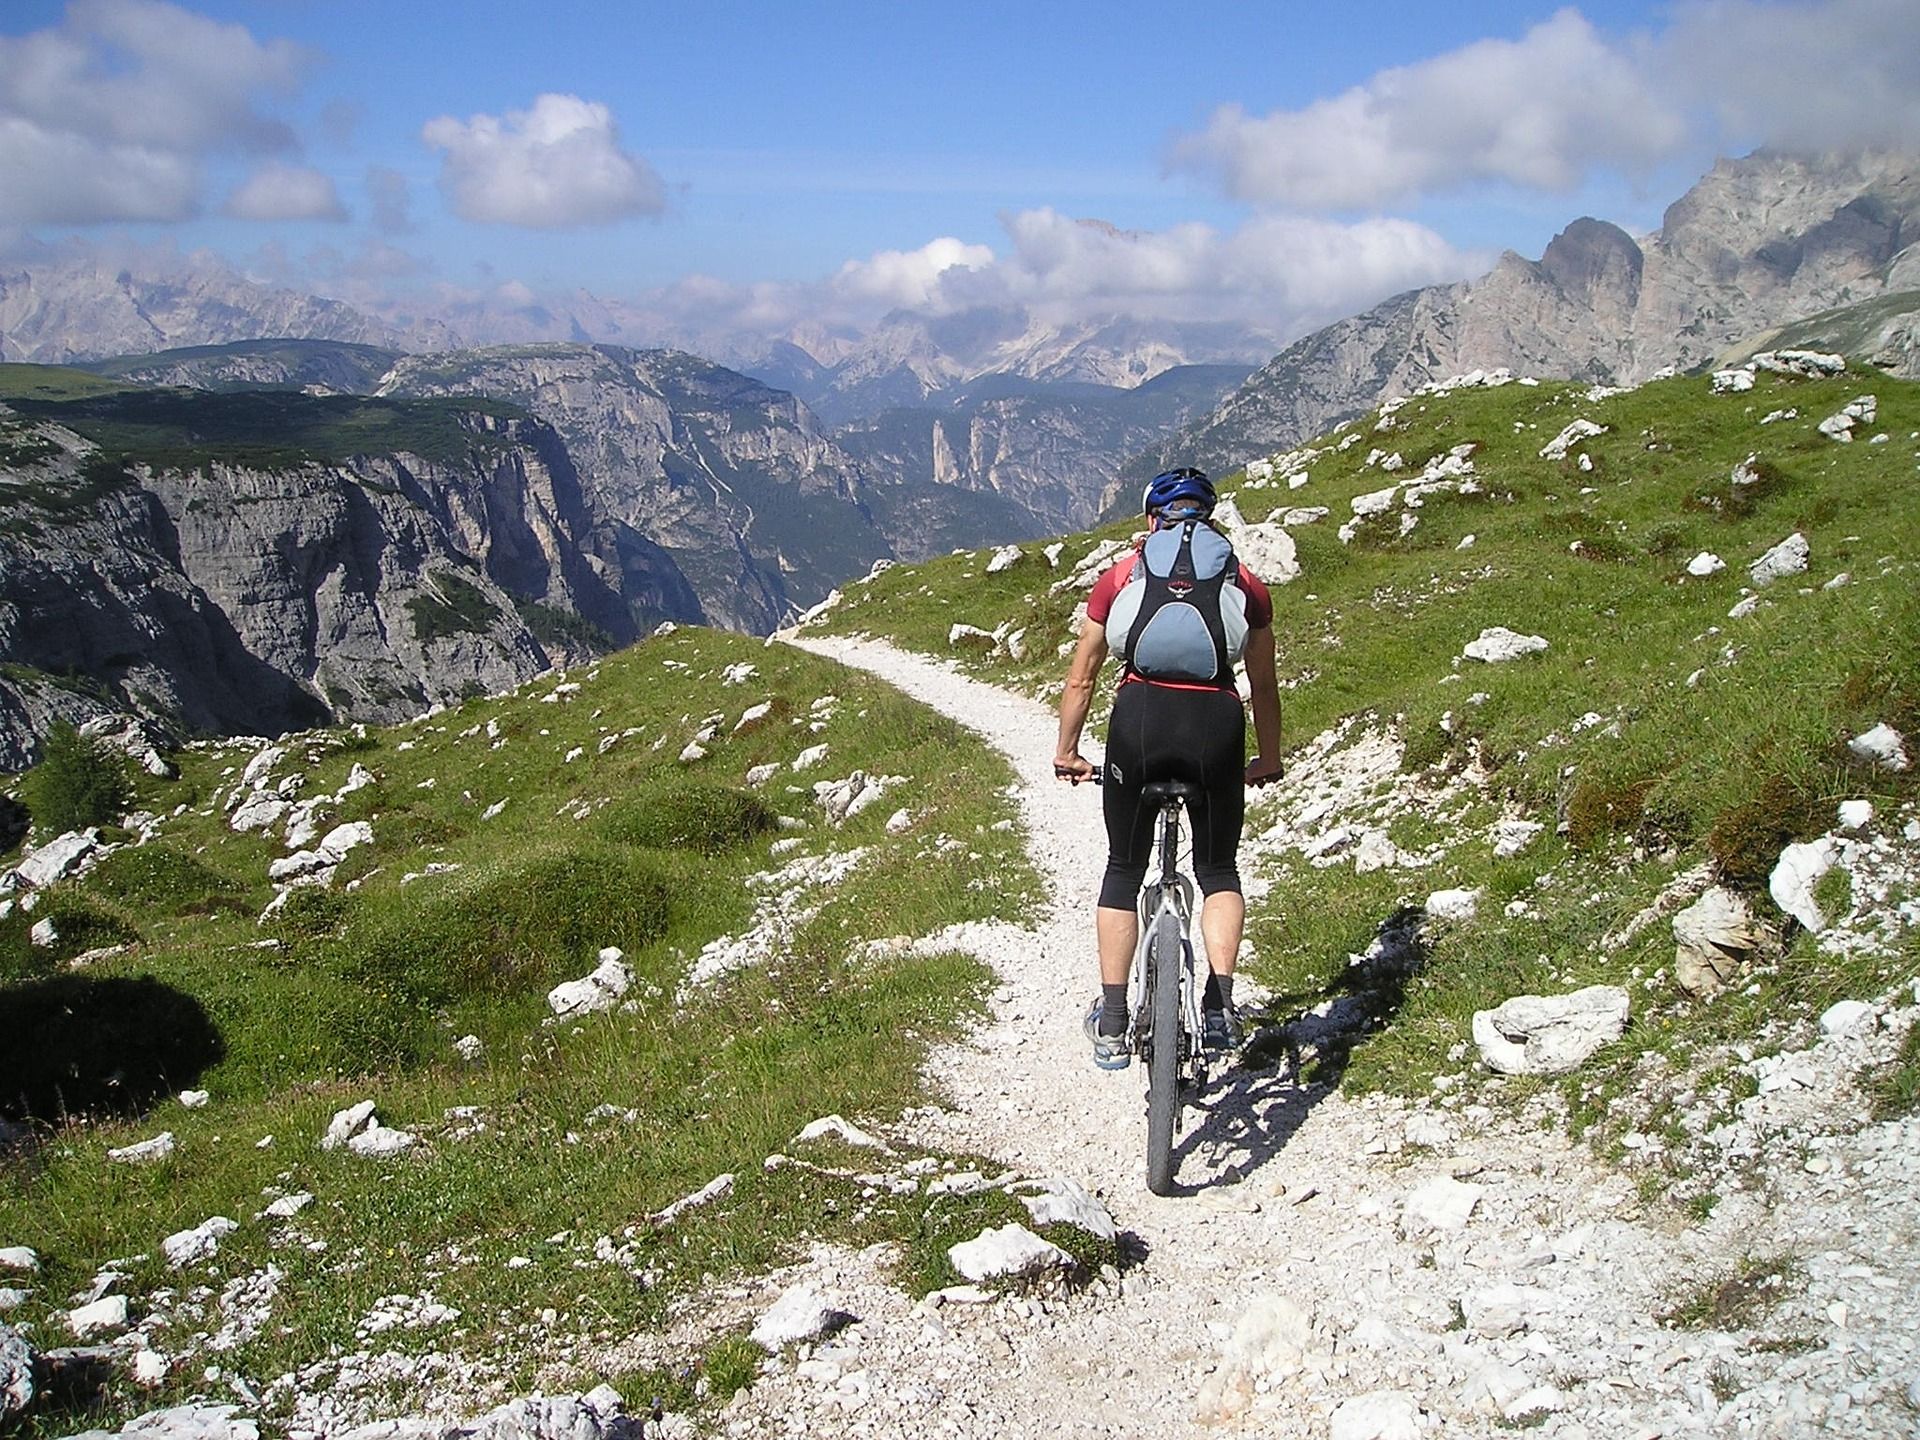 Vélo de montagne, Image par Simon de https://pixabay.com/fr/photos/v%C3%A9lo-de-montagne-v%C3%A9lo-croix-alpine-175216/